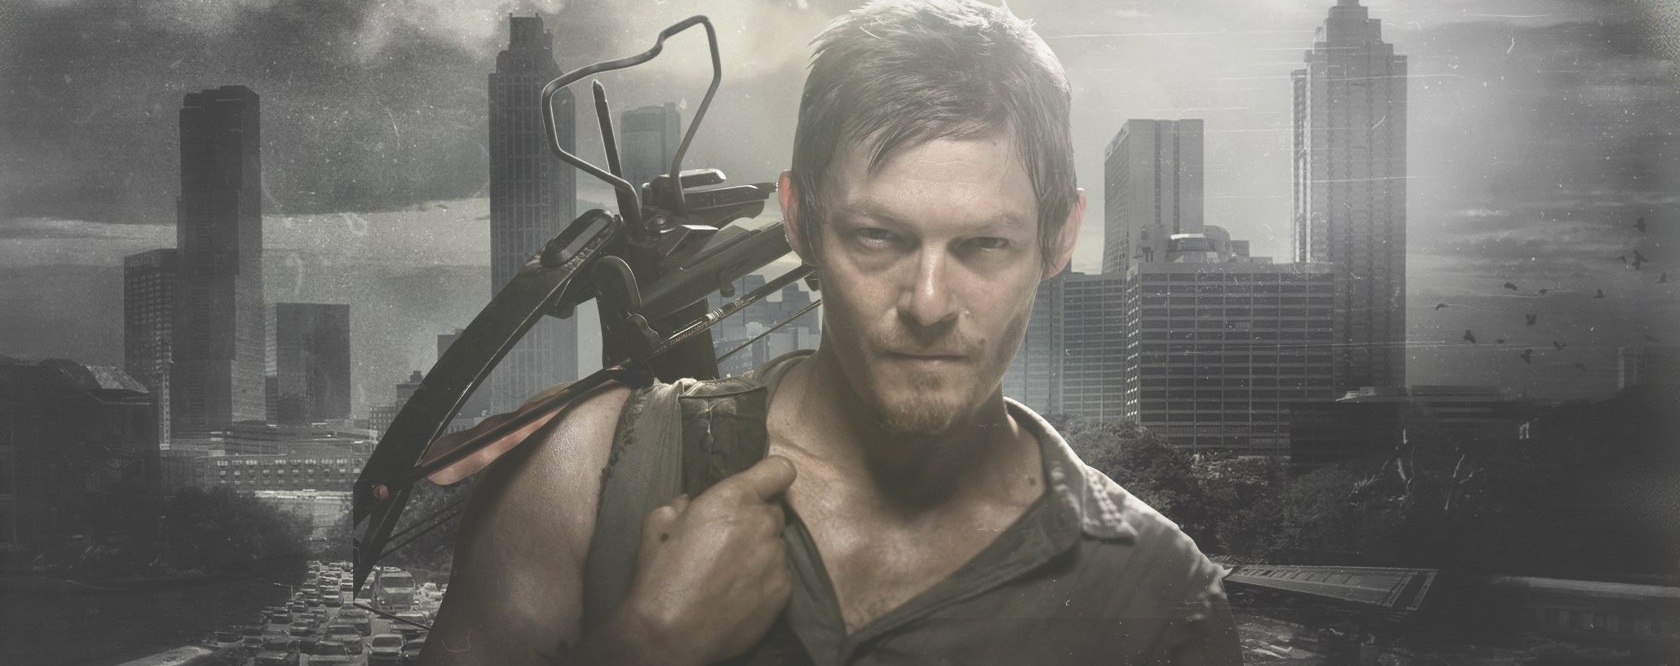 Por que Daryl Dixon é o personagem mais popular em The Walking Dead?